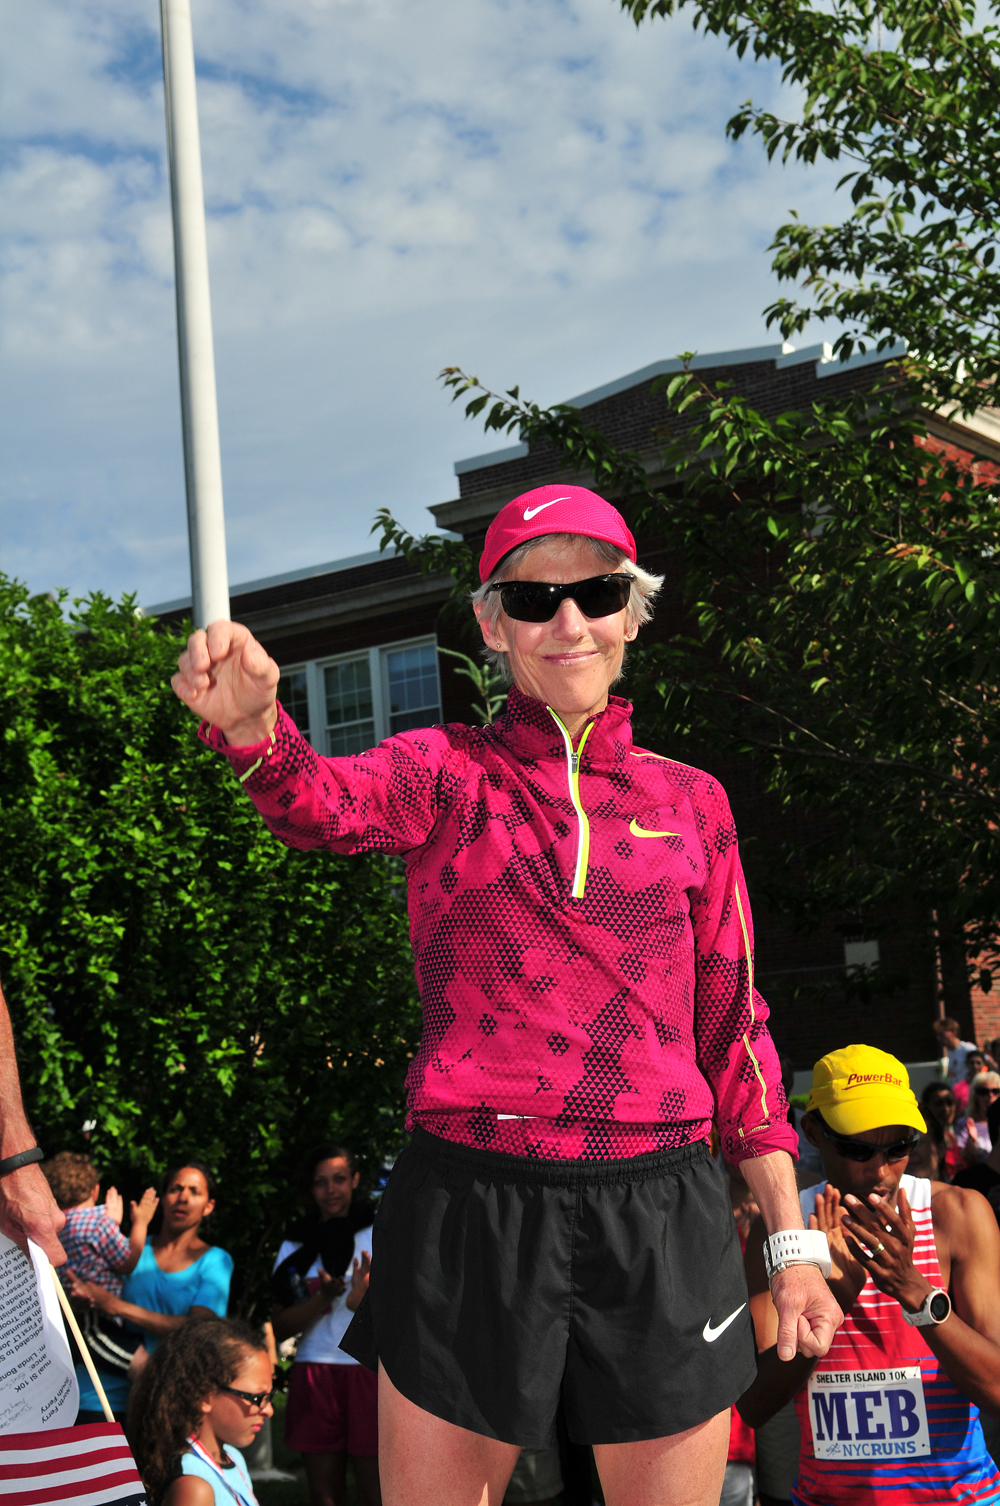 Olympic gold medal winner Joan Benoit Samuelson before the start of the race. (Credit: Bill Landon)